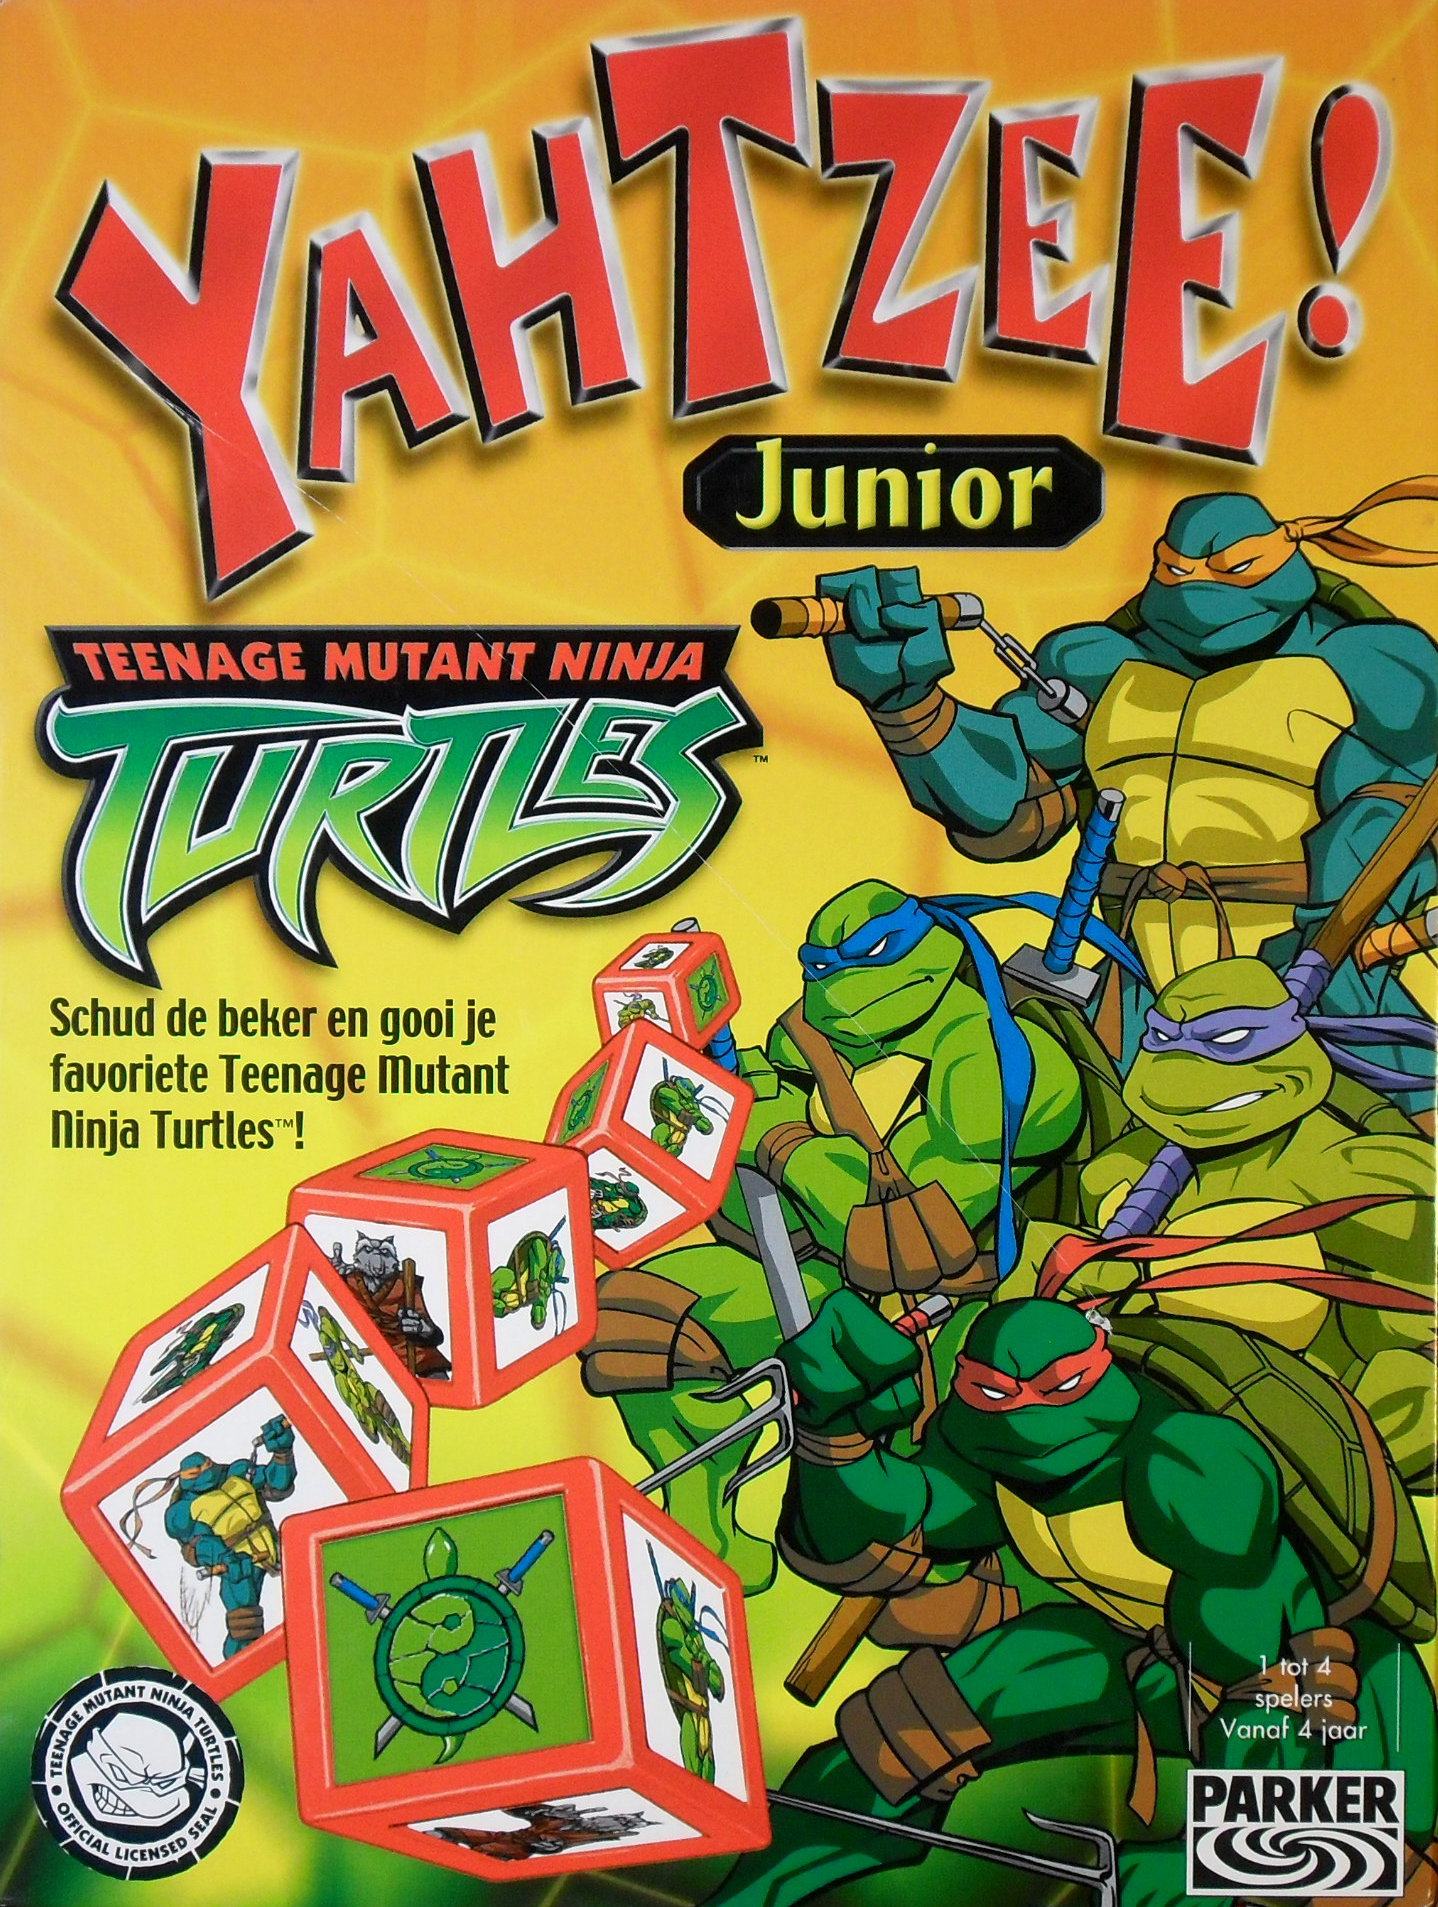 Teenage Mutant Ninja Turtles: Yahtzee! Junior